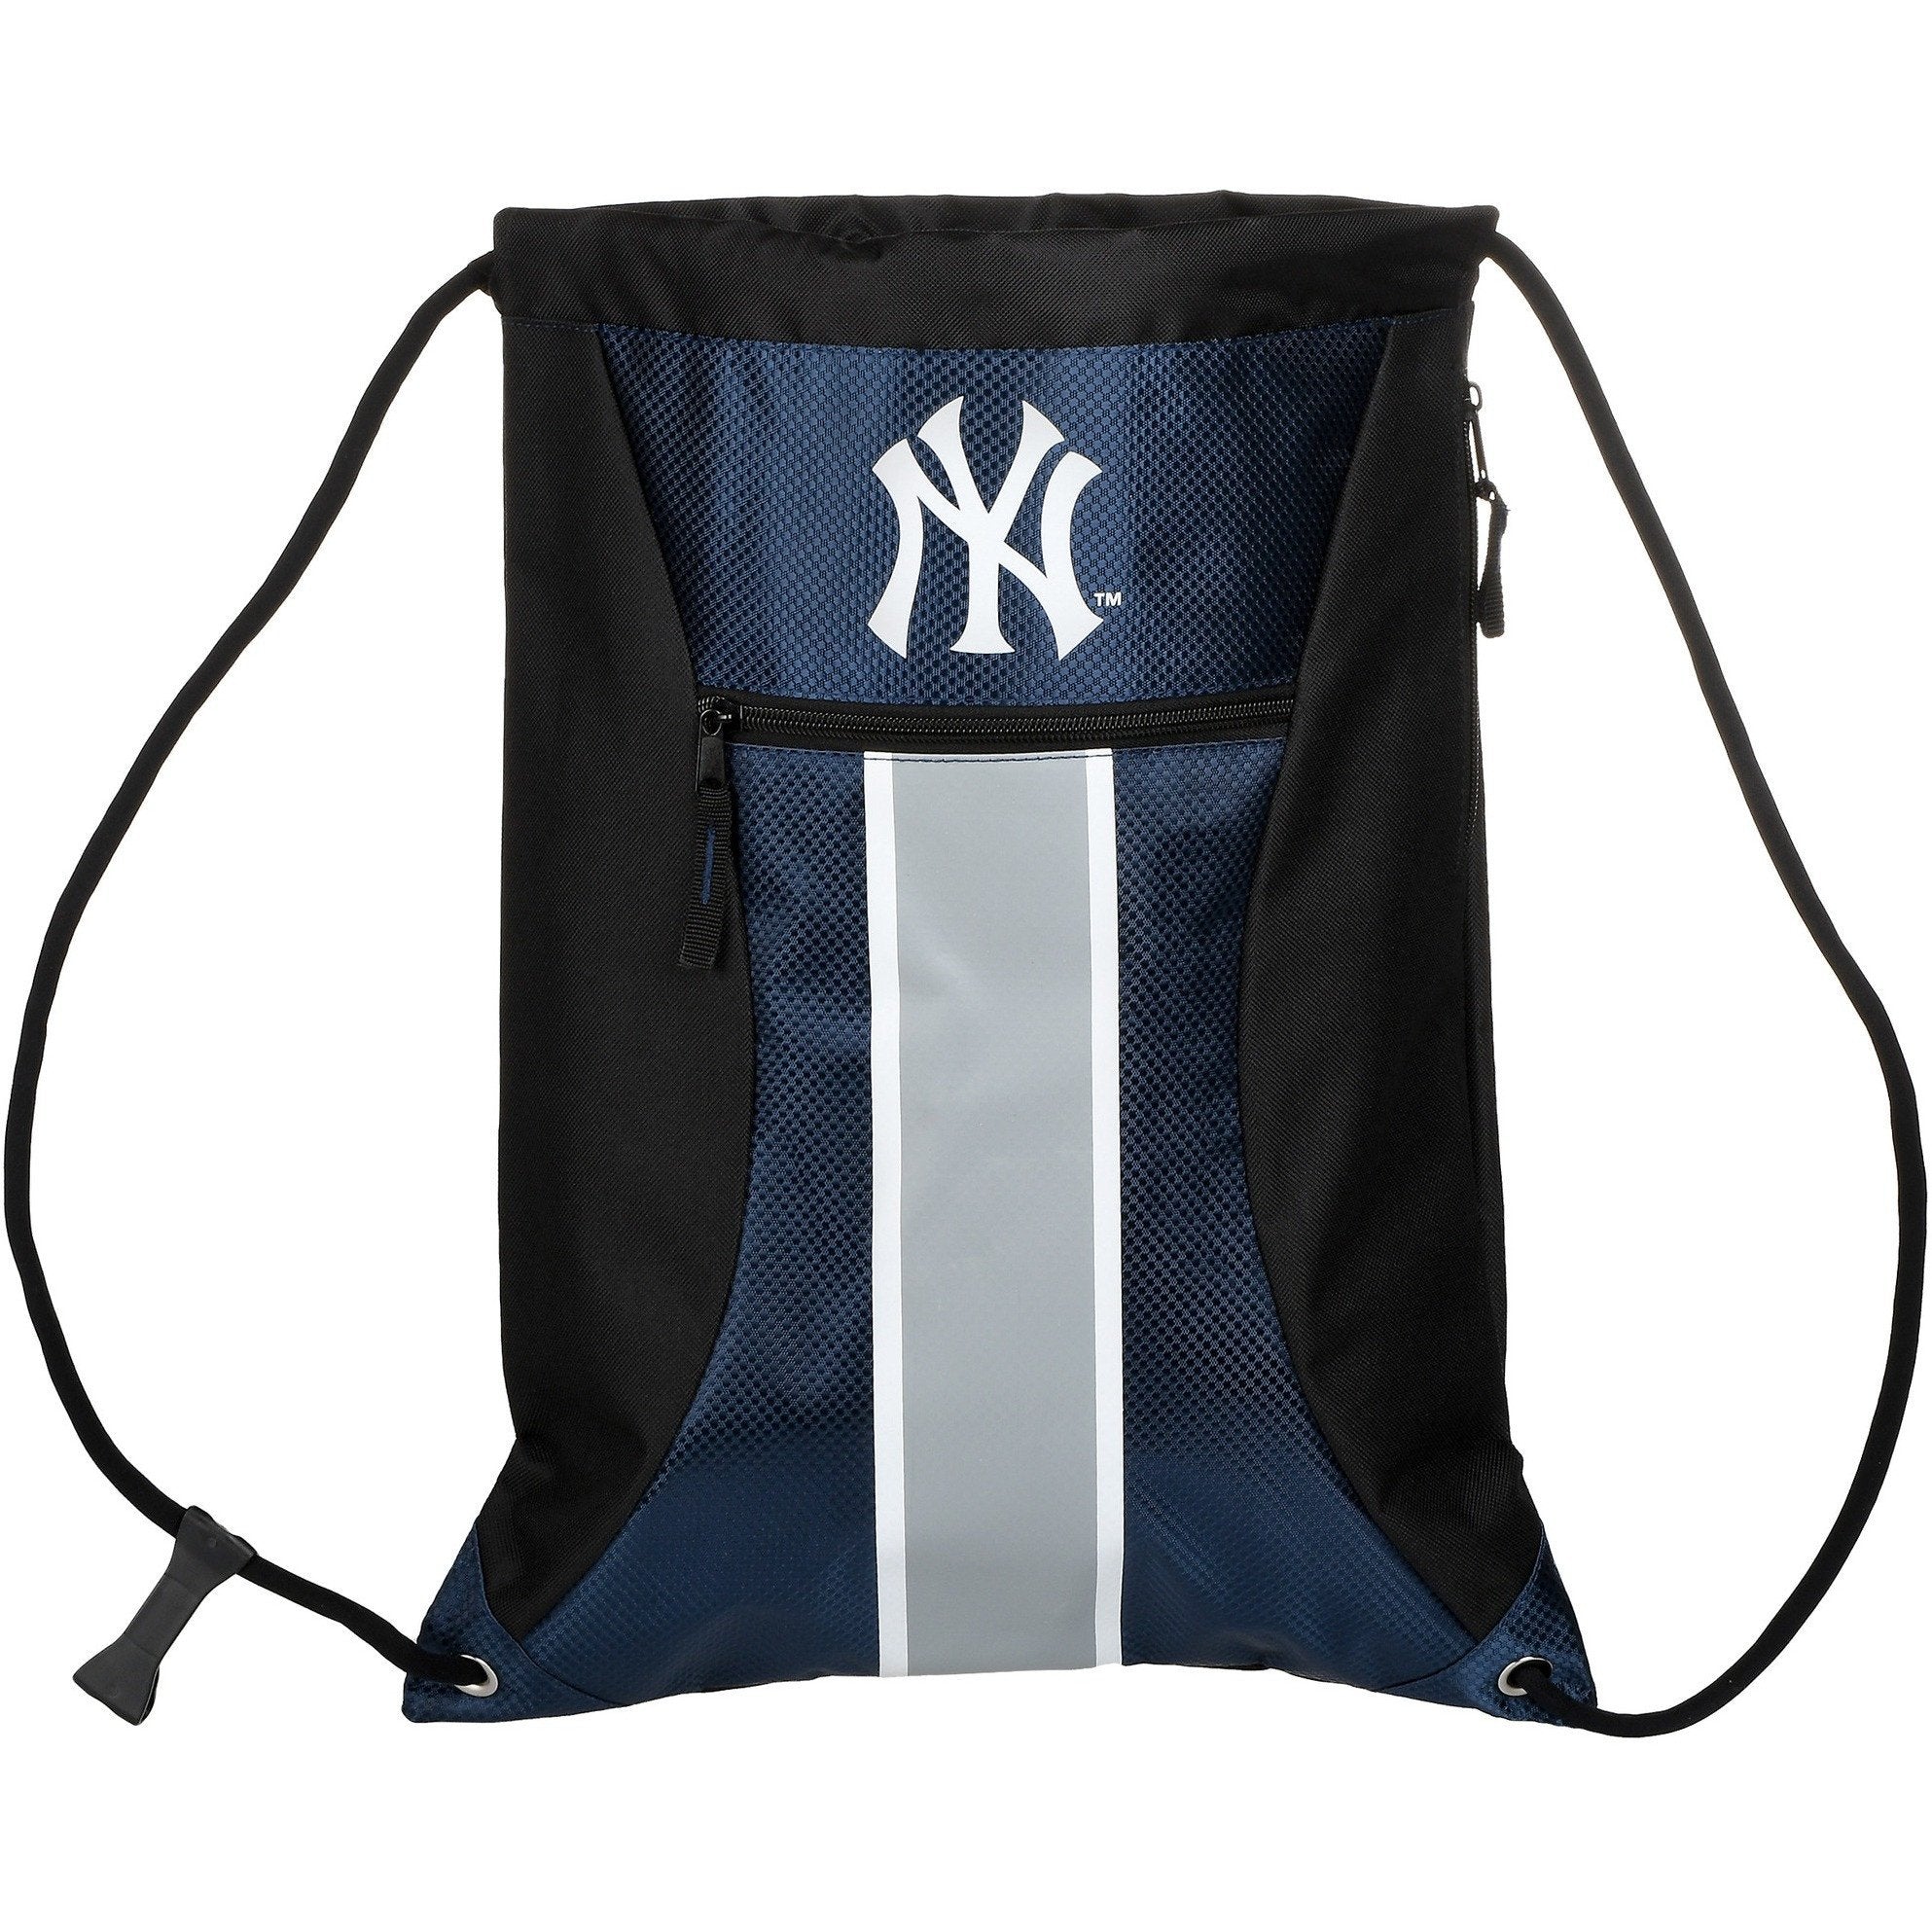 Basic Big Logo Canvas Bucket Bag NY Yankees Black